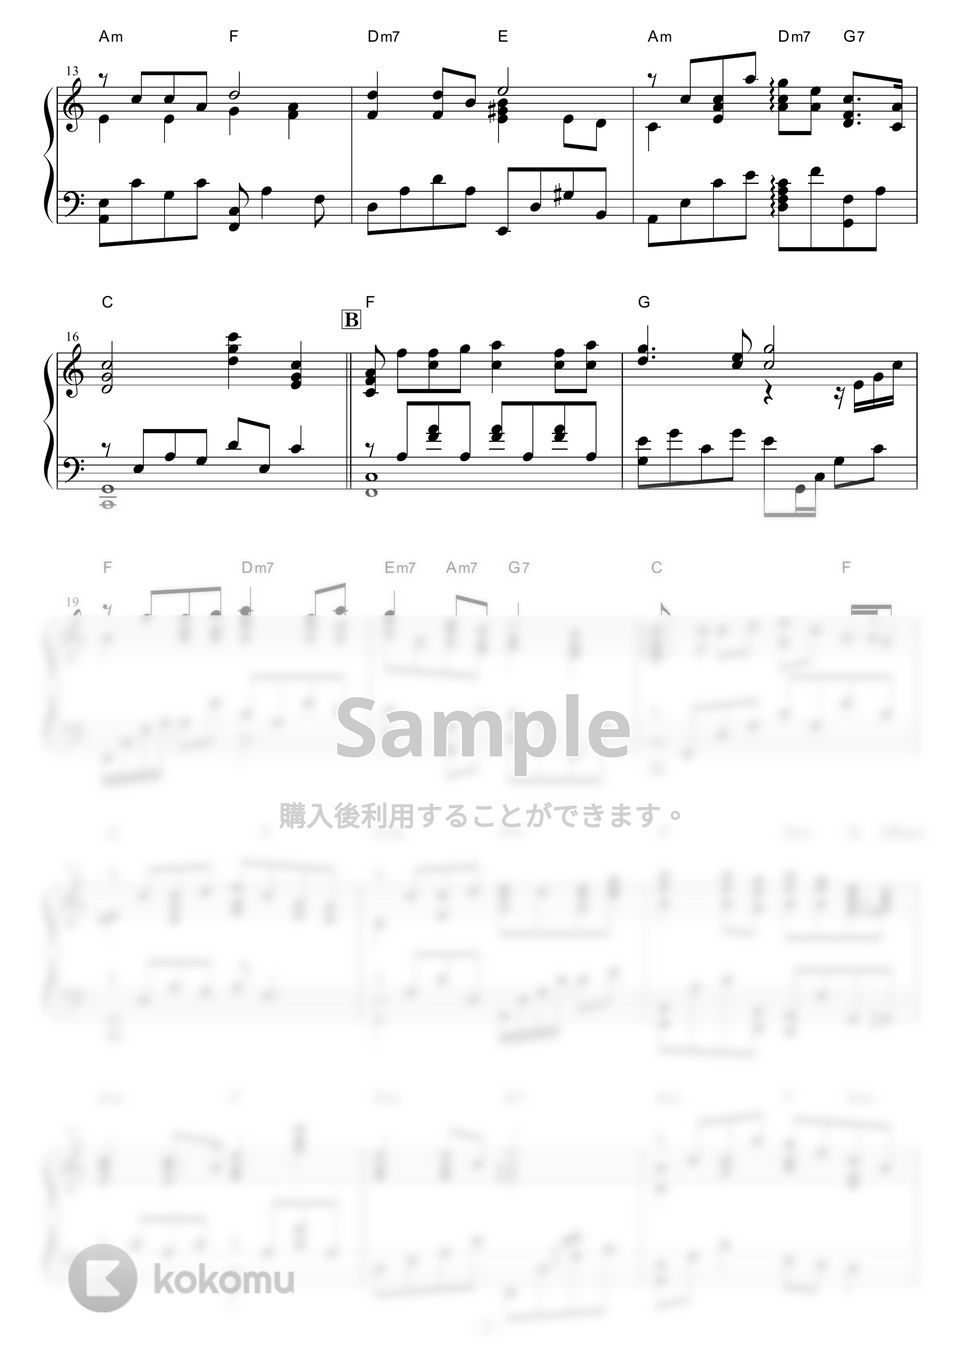 坂本九 - 上を向いて歩こう (Jazz ver.) by piano*score